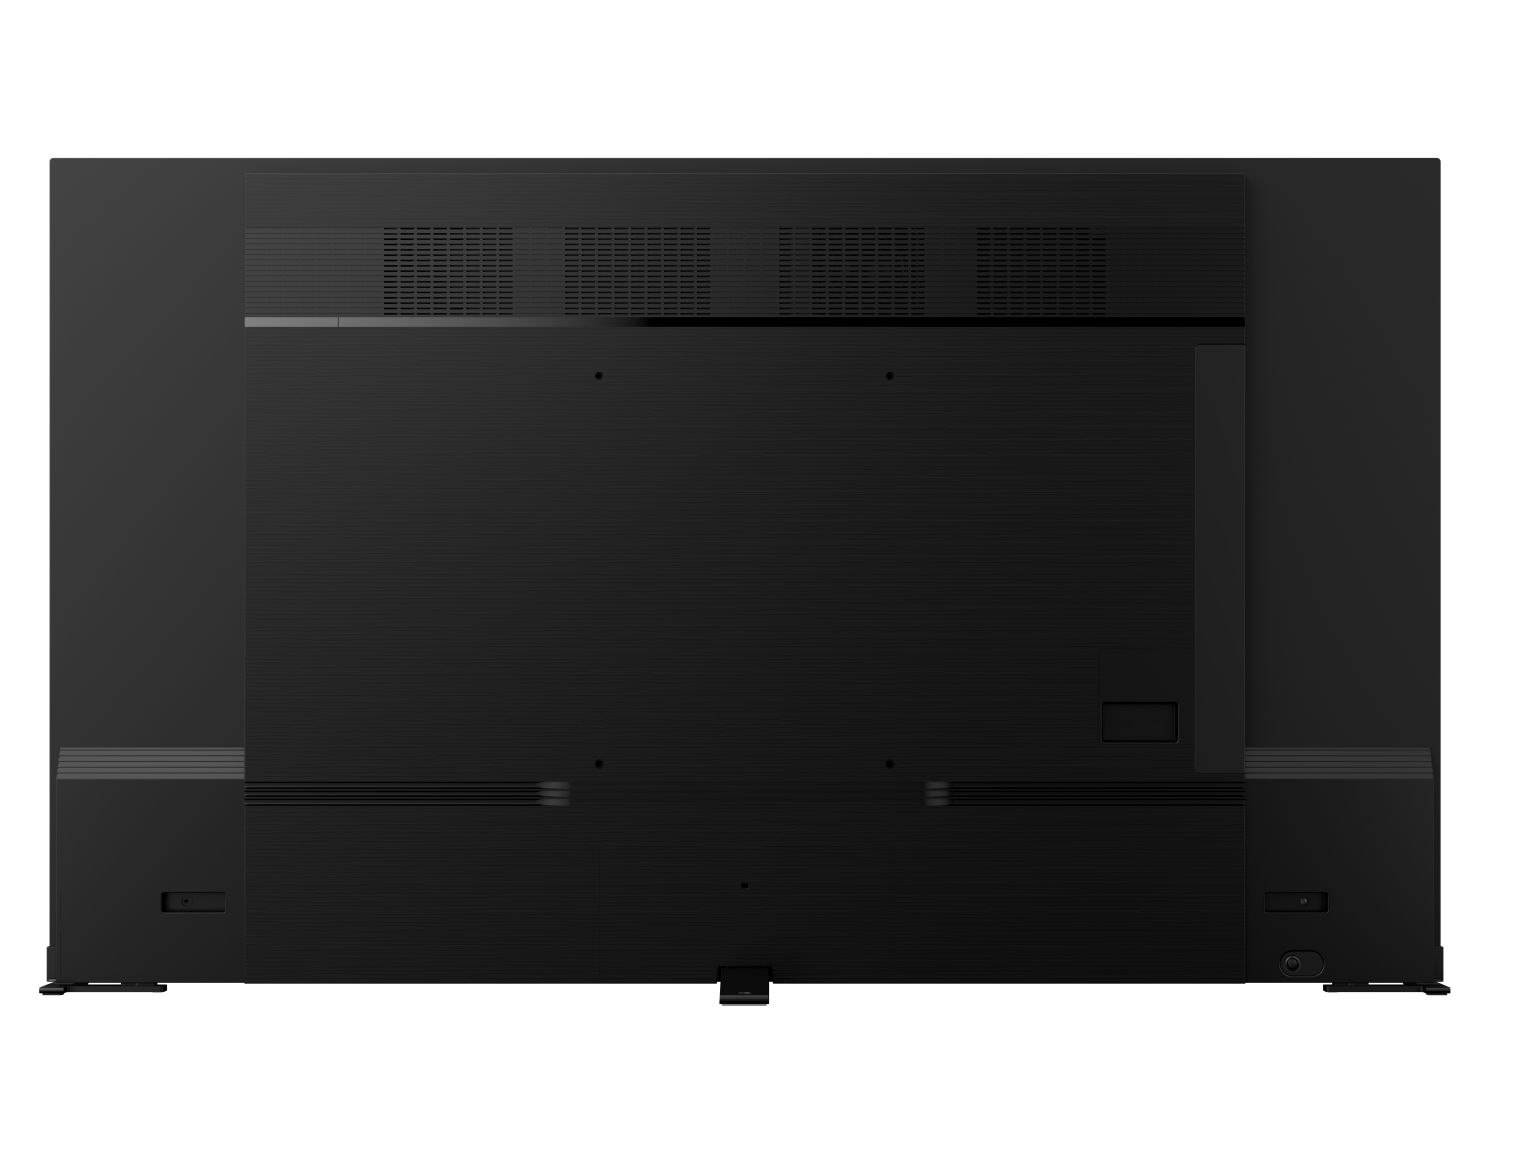 TV OLED 4K 65inch (65X9900L) - VIDDA TV - OLED 4K - Công nghệ âm thanh REGZA Power Audio Extreme - Màu sắc nguyên bản - Âm trầm mạnh mẽ - Loa 113W - Tần số quét 120Hz - Hàng chính hãng - Bảo hành 2 năm